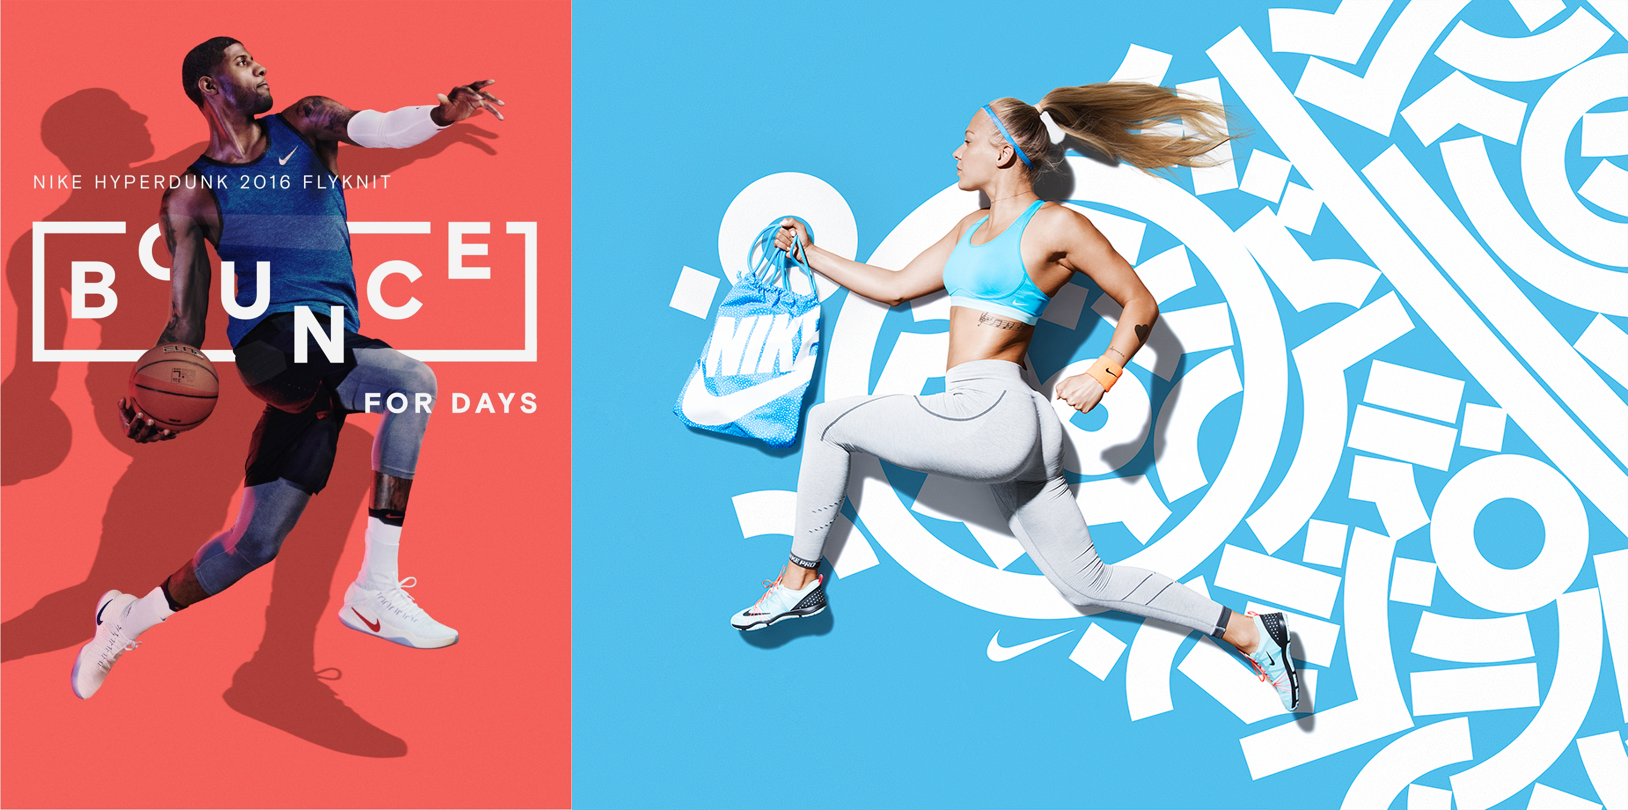 Nike adverts